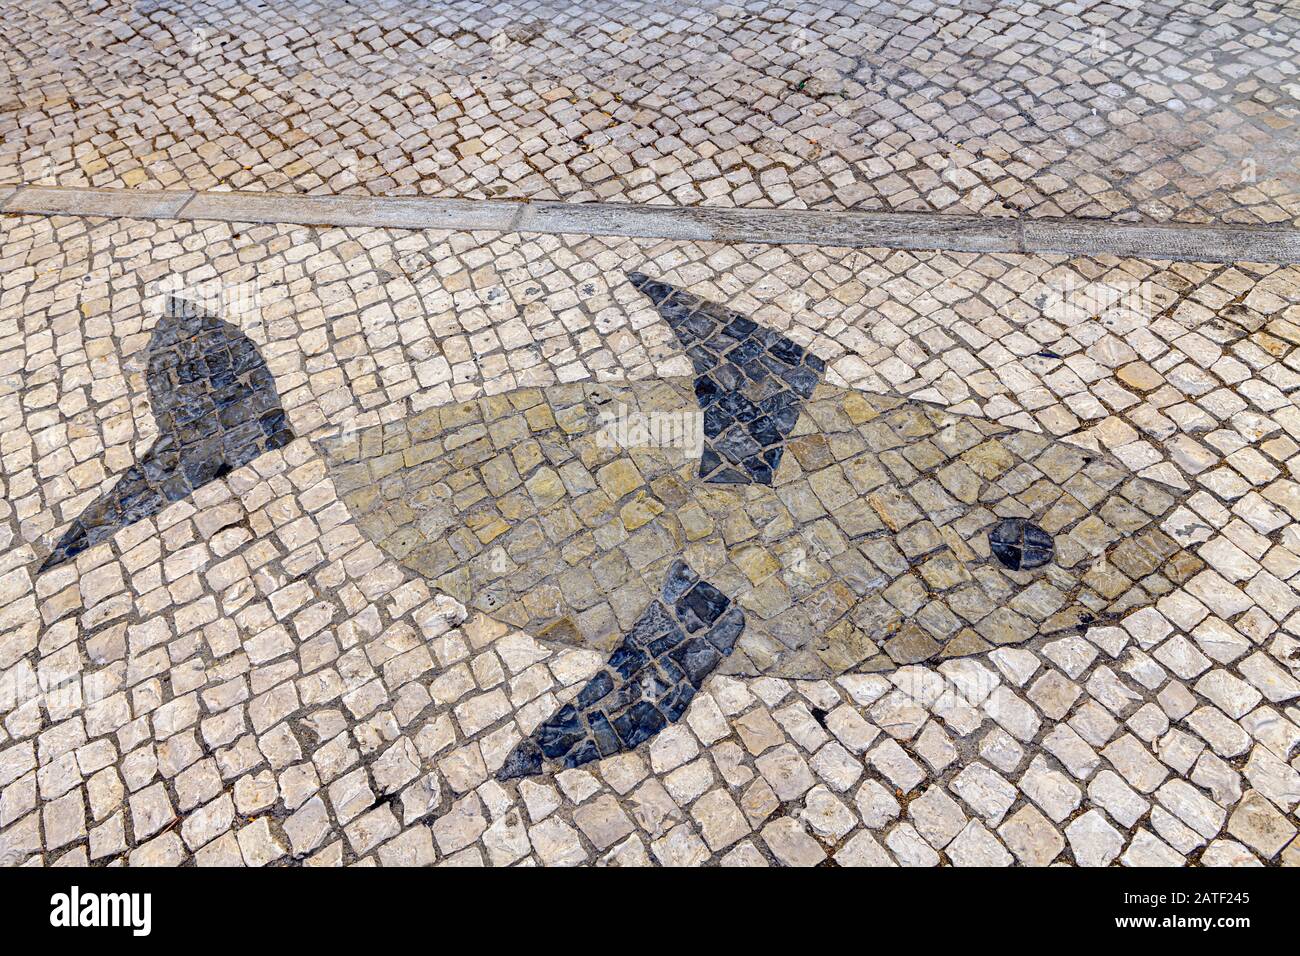 Fish pattern in traditional Portuguese calcada cobble stones. Fuseta, Algarve, Portugal. Stock Photo